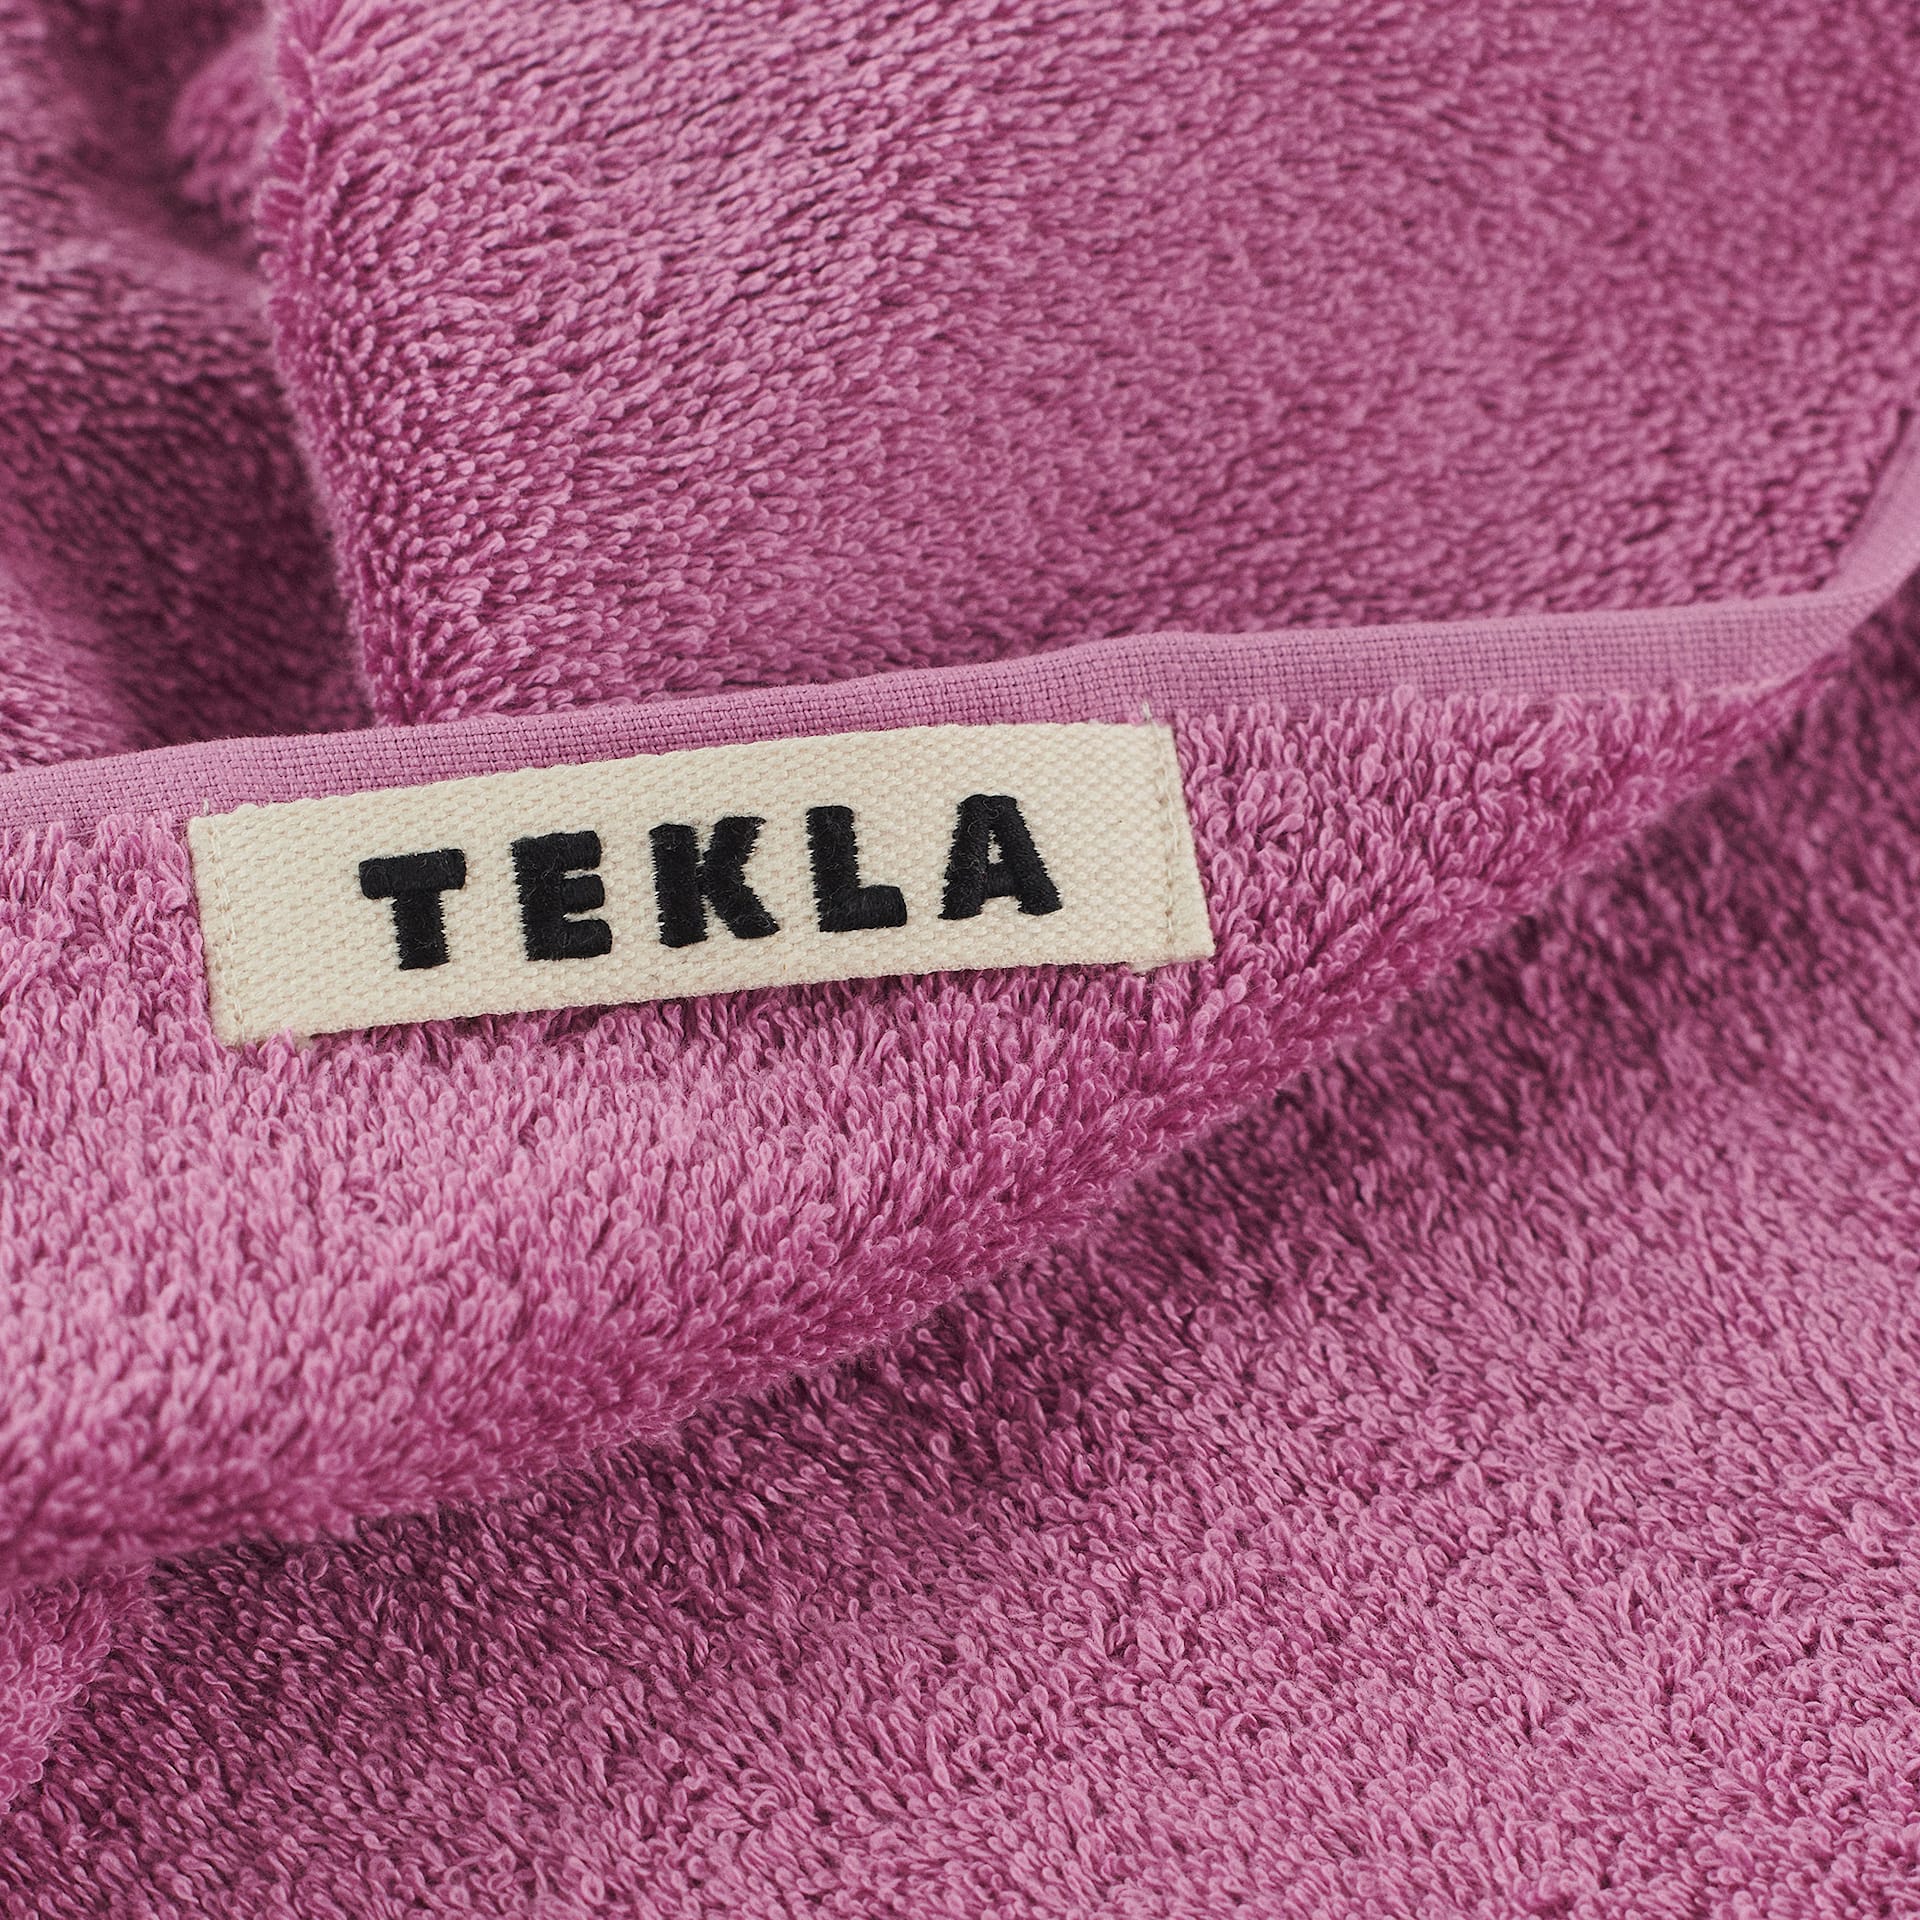 Terry Towel Magenta - TEKLA - NO GA